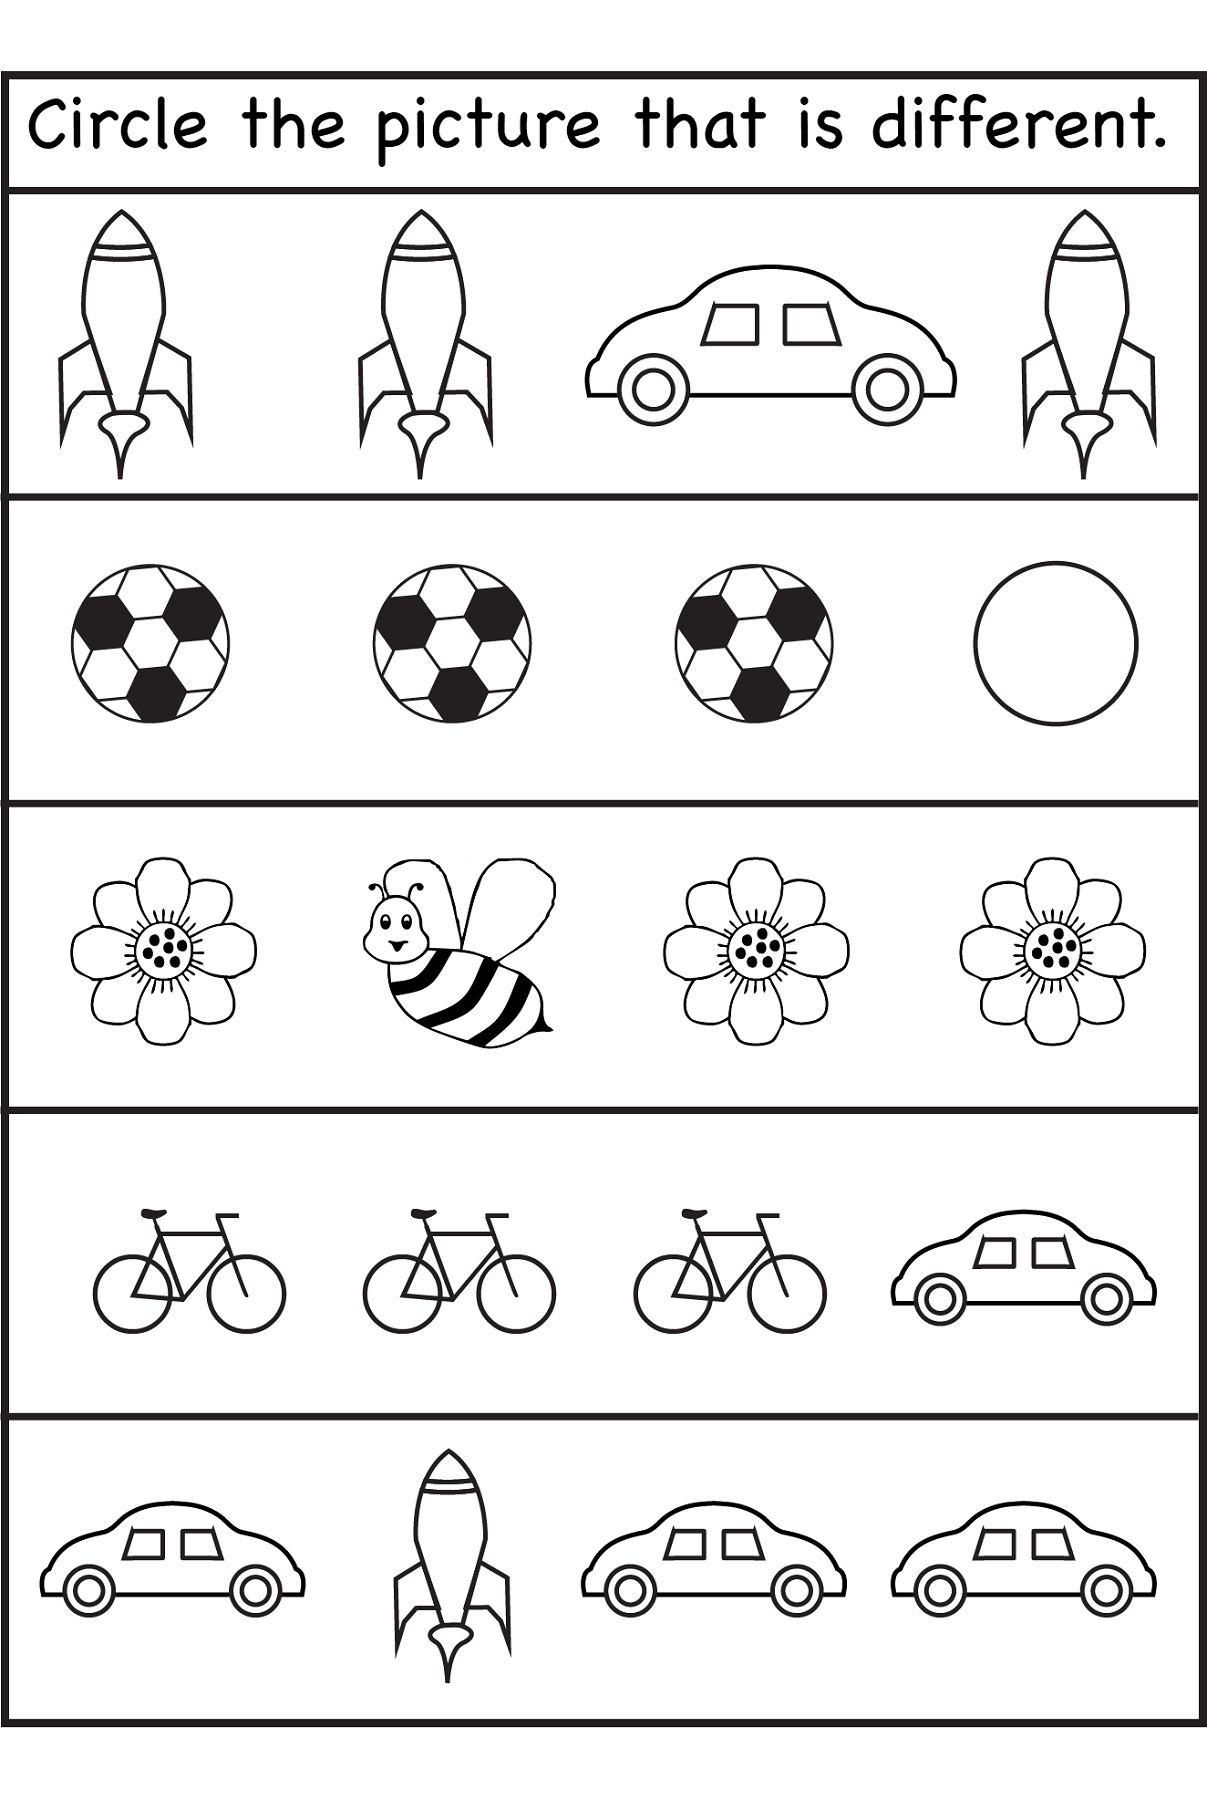 free-printable-preschool-worksheets-age-3-lyana-worksheets